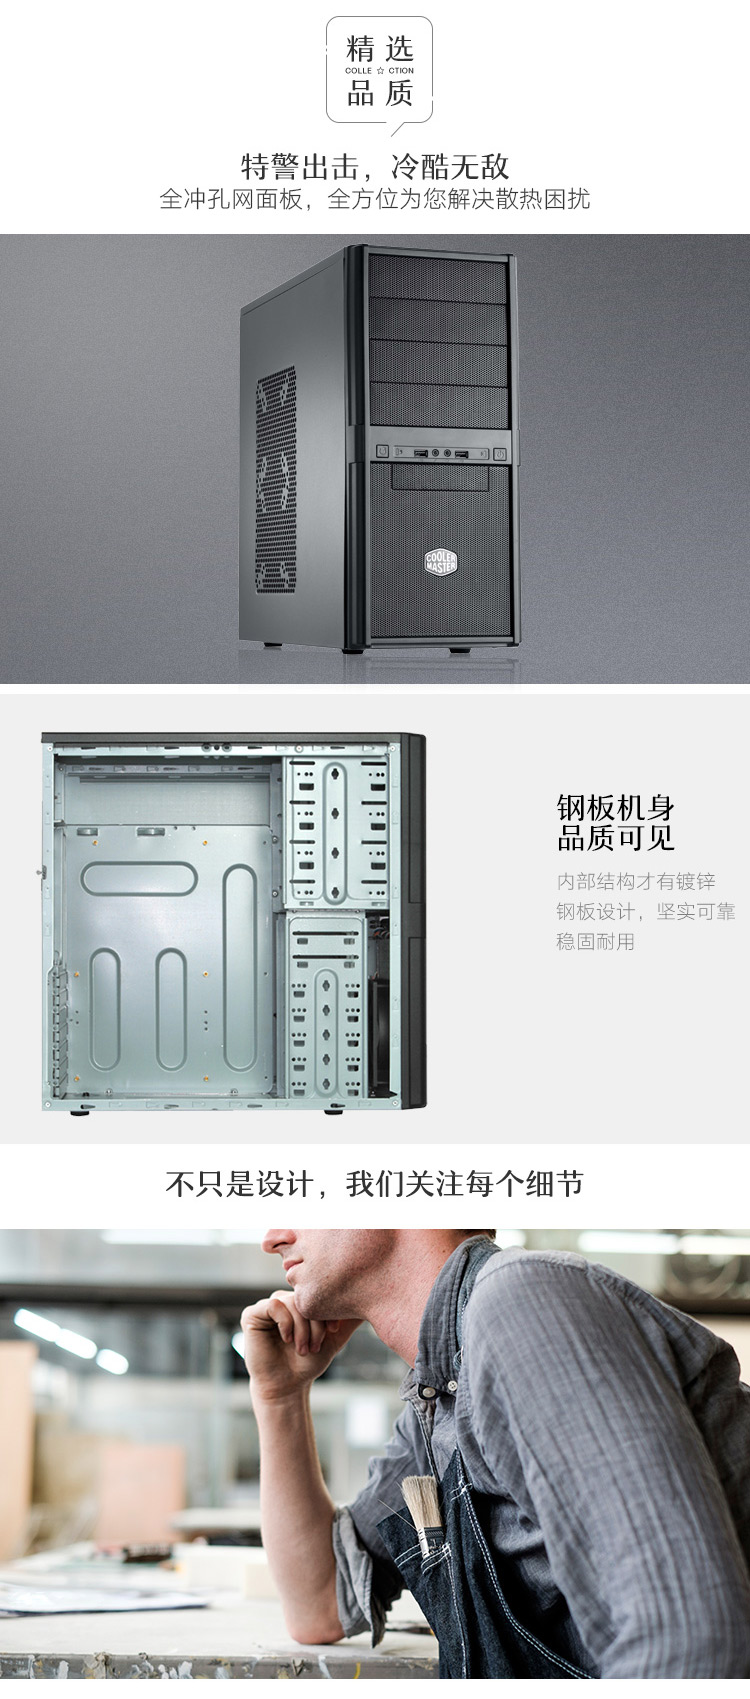 酷冷至尊(CoolerMaster)特警365 中塔式电脑主机机箱(支持ATX主板/ USB3.0/支持SSD/防尘) 黑色